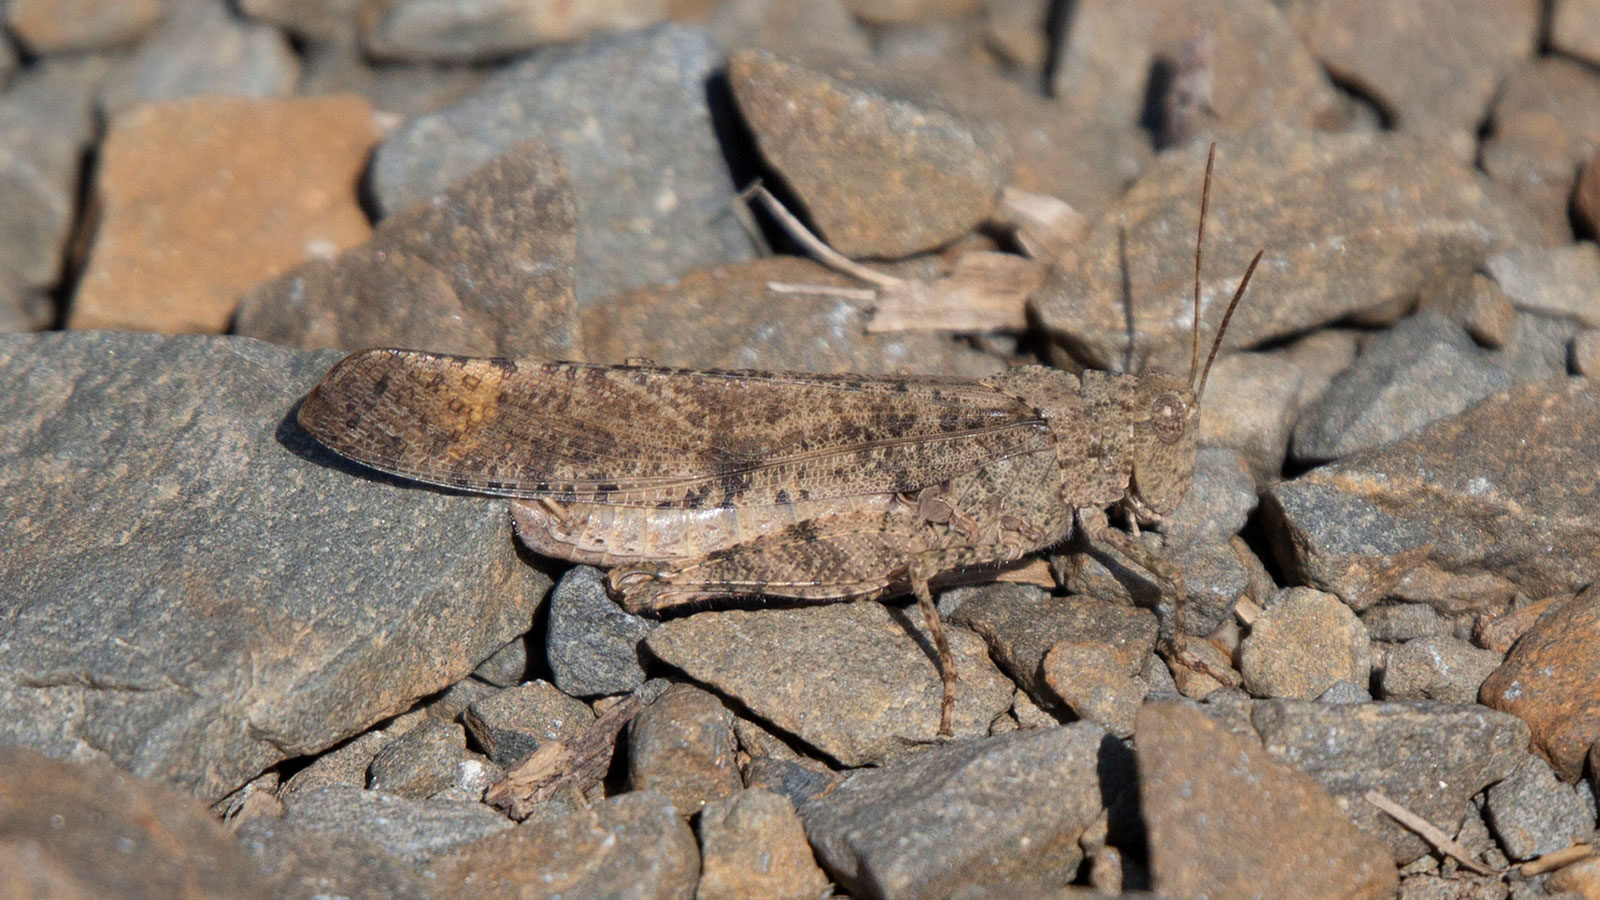 Pallid-winged grasshopper on gravel